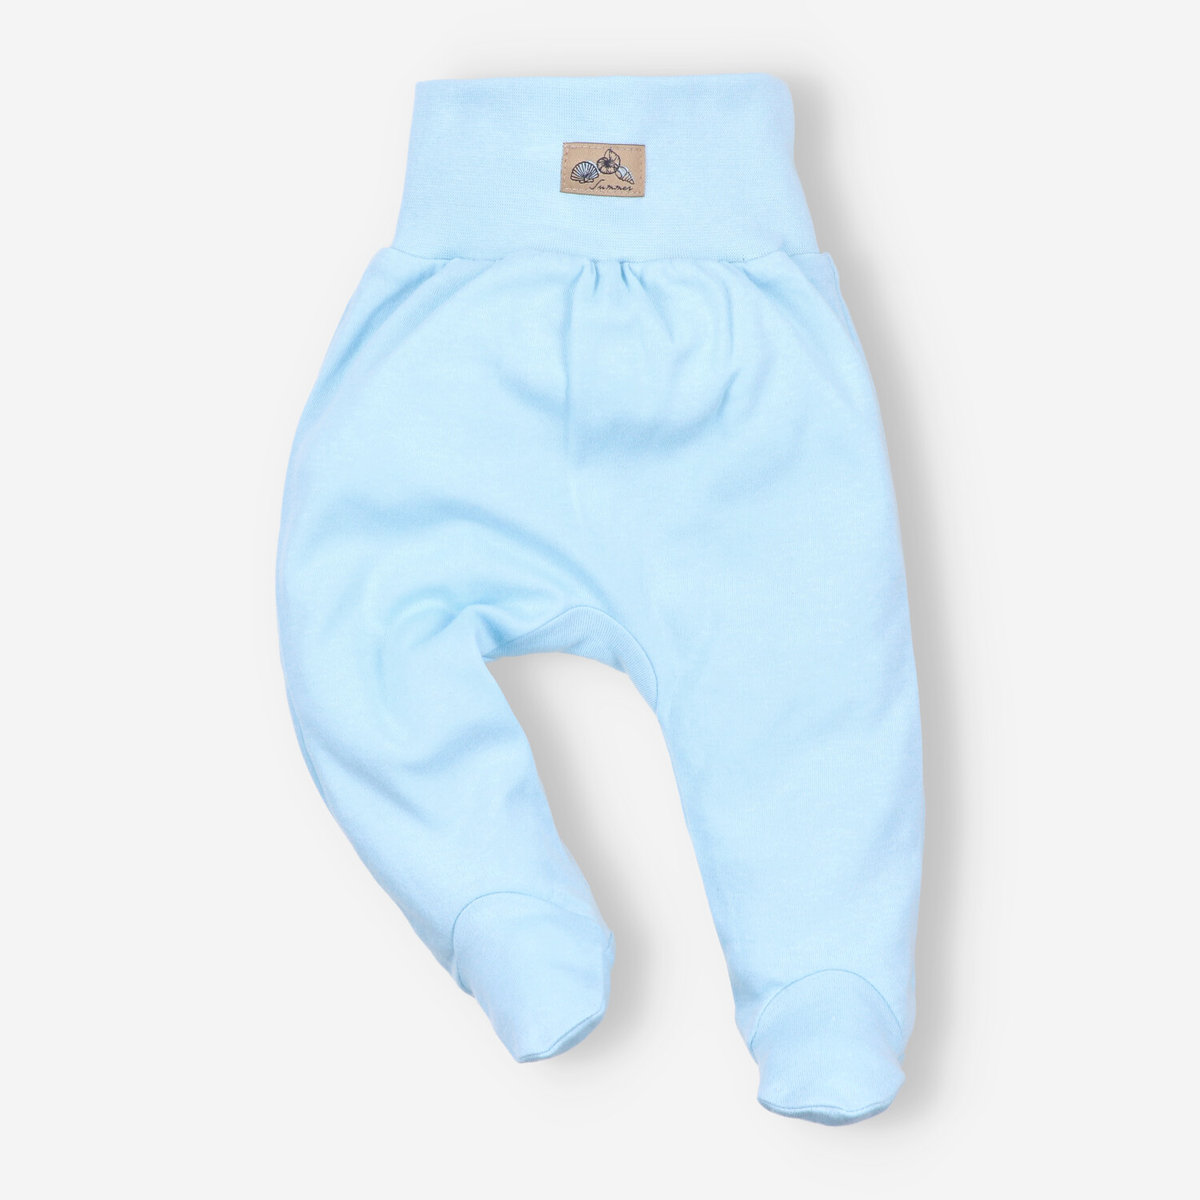 Błękitne półśpiochy niemowlęce SHELLS z bawełny organicznej dla chłopca-68